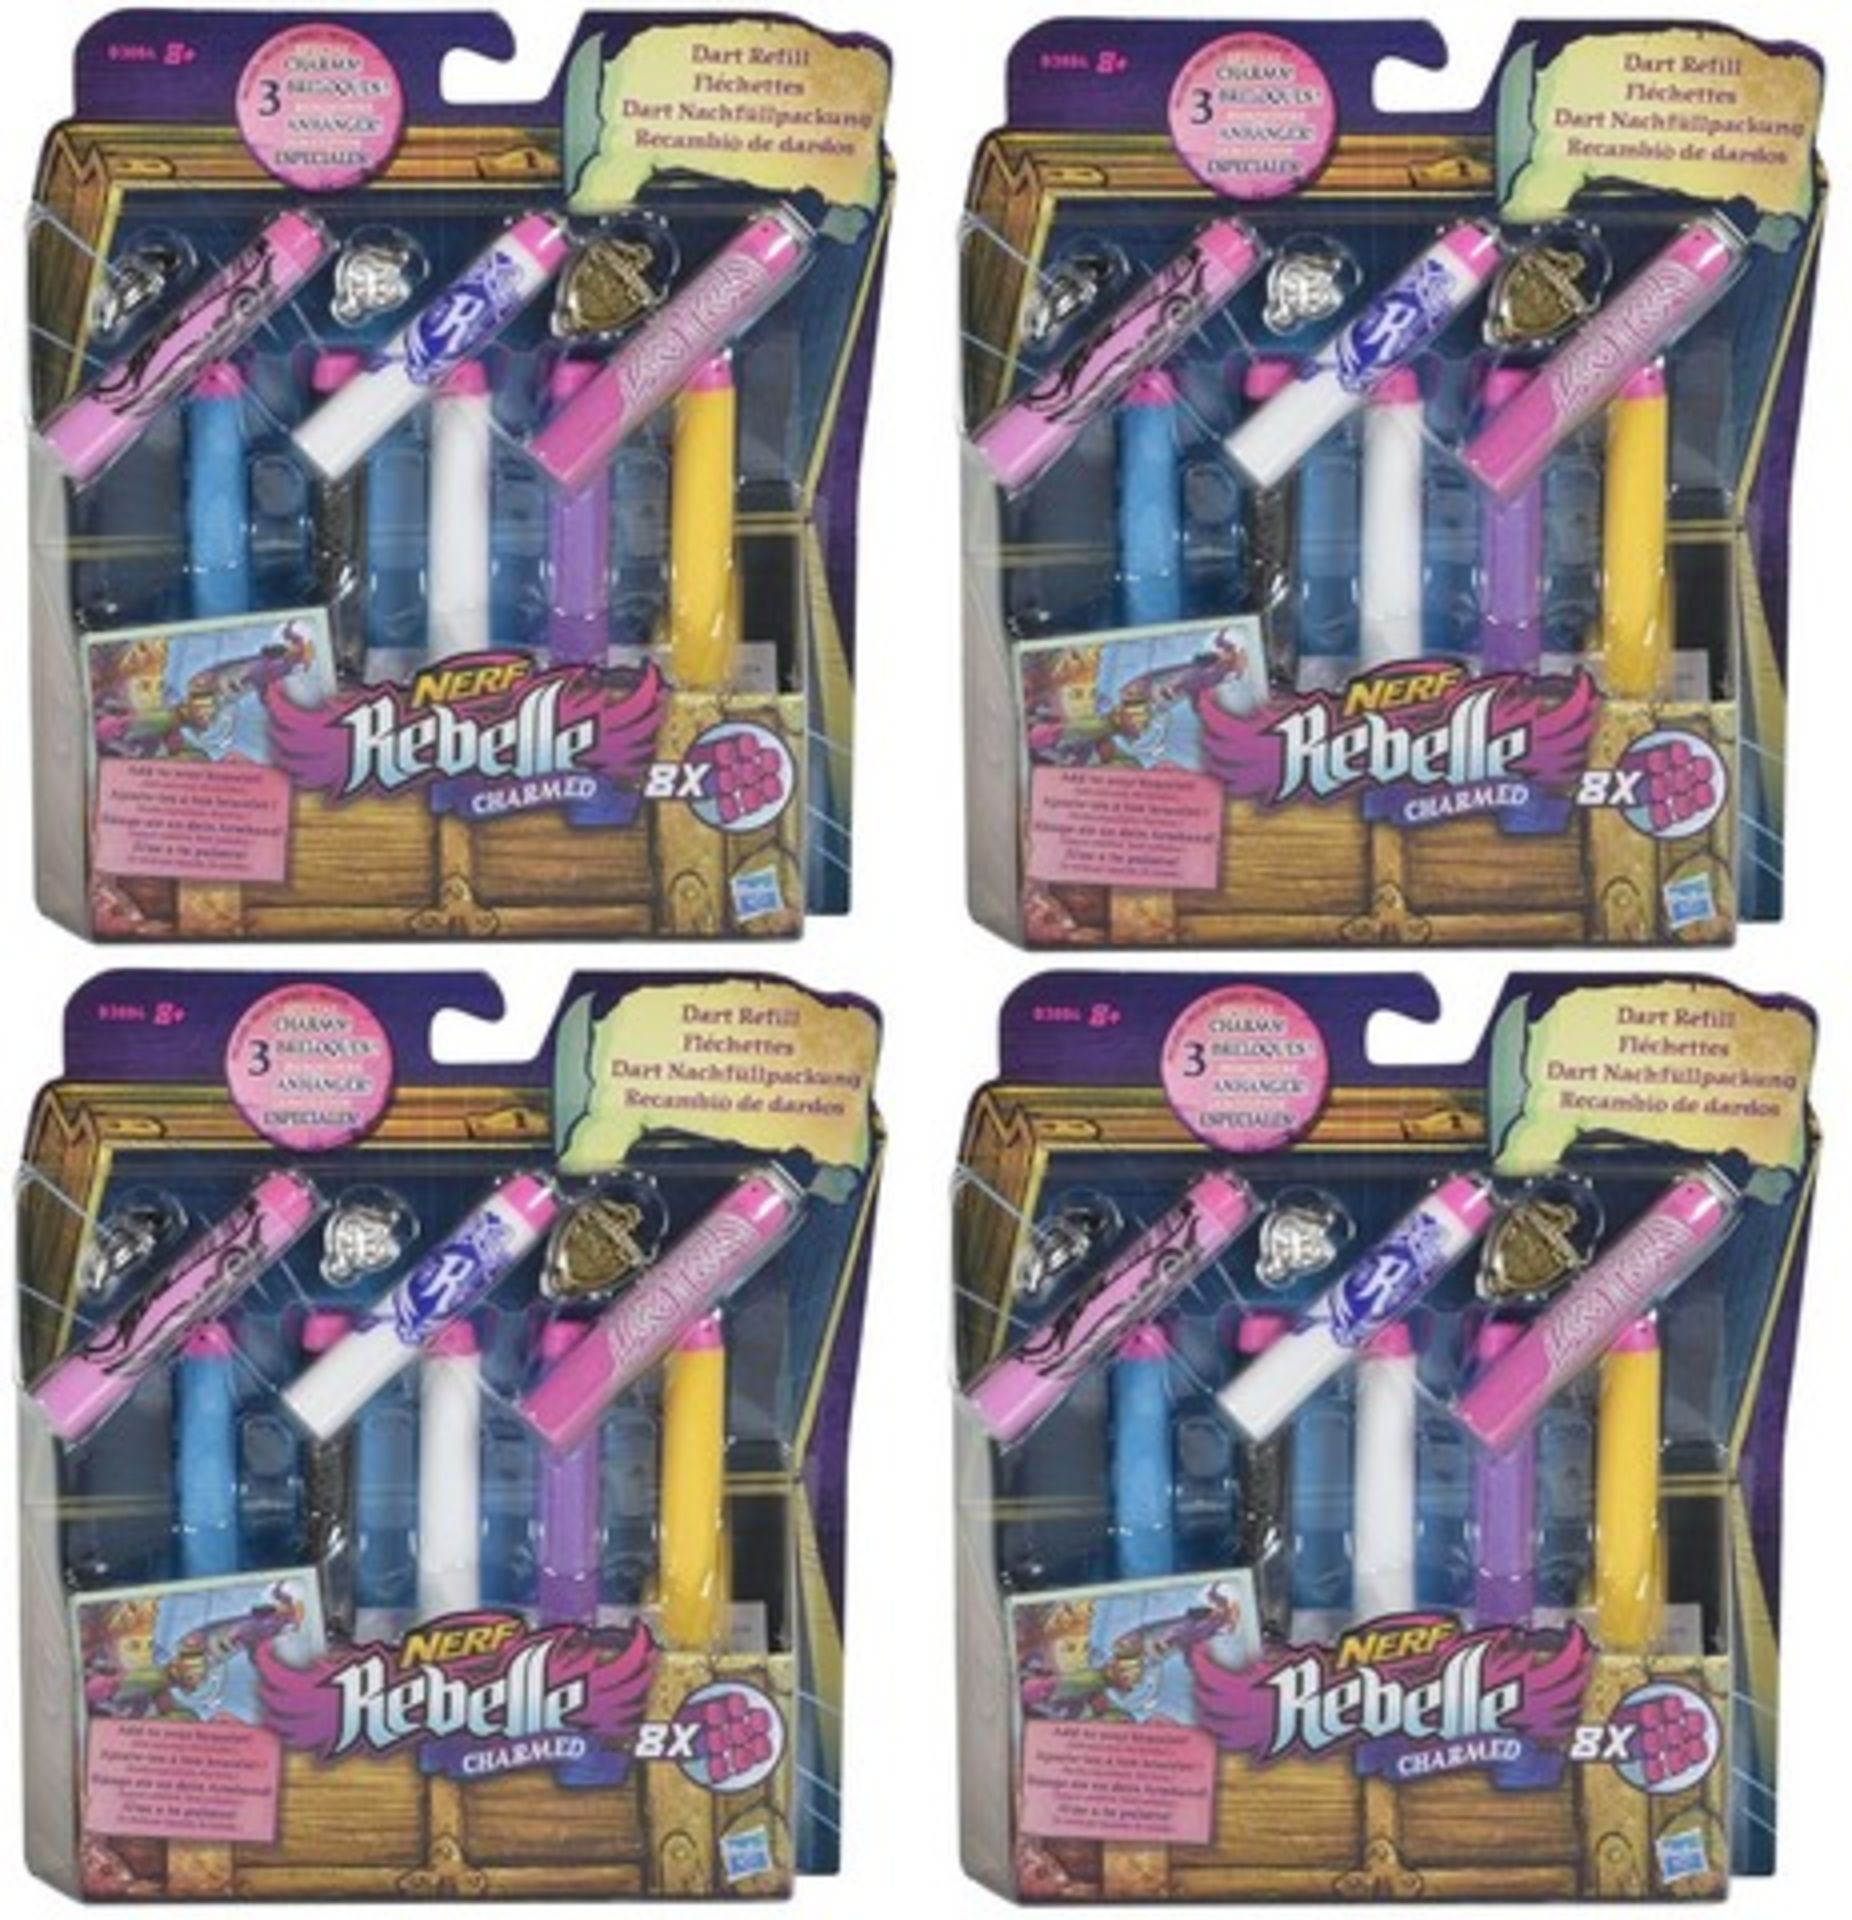 + VAT Brand New 4 Packs Of Nerf Rebelle Charmed 8x Dart Refills With 3 Charms For Your Bracelet -